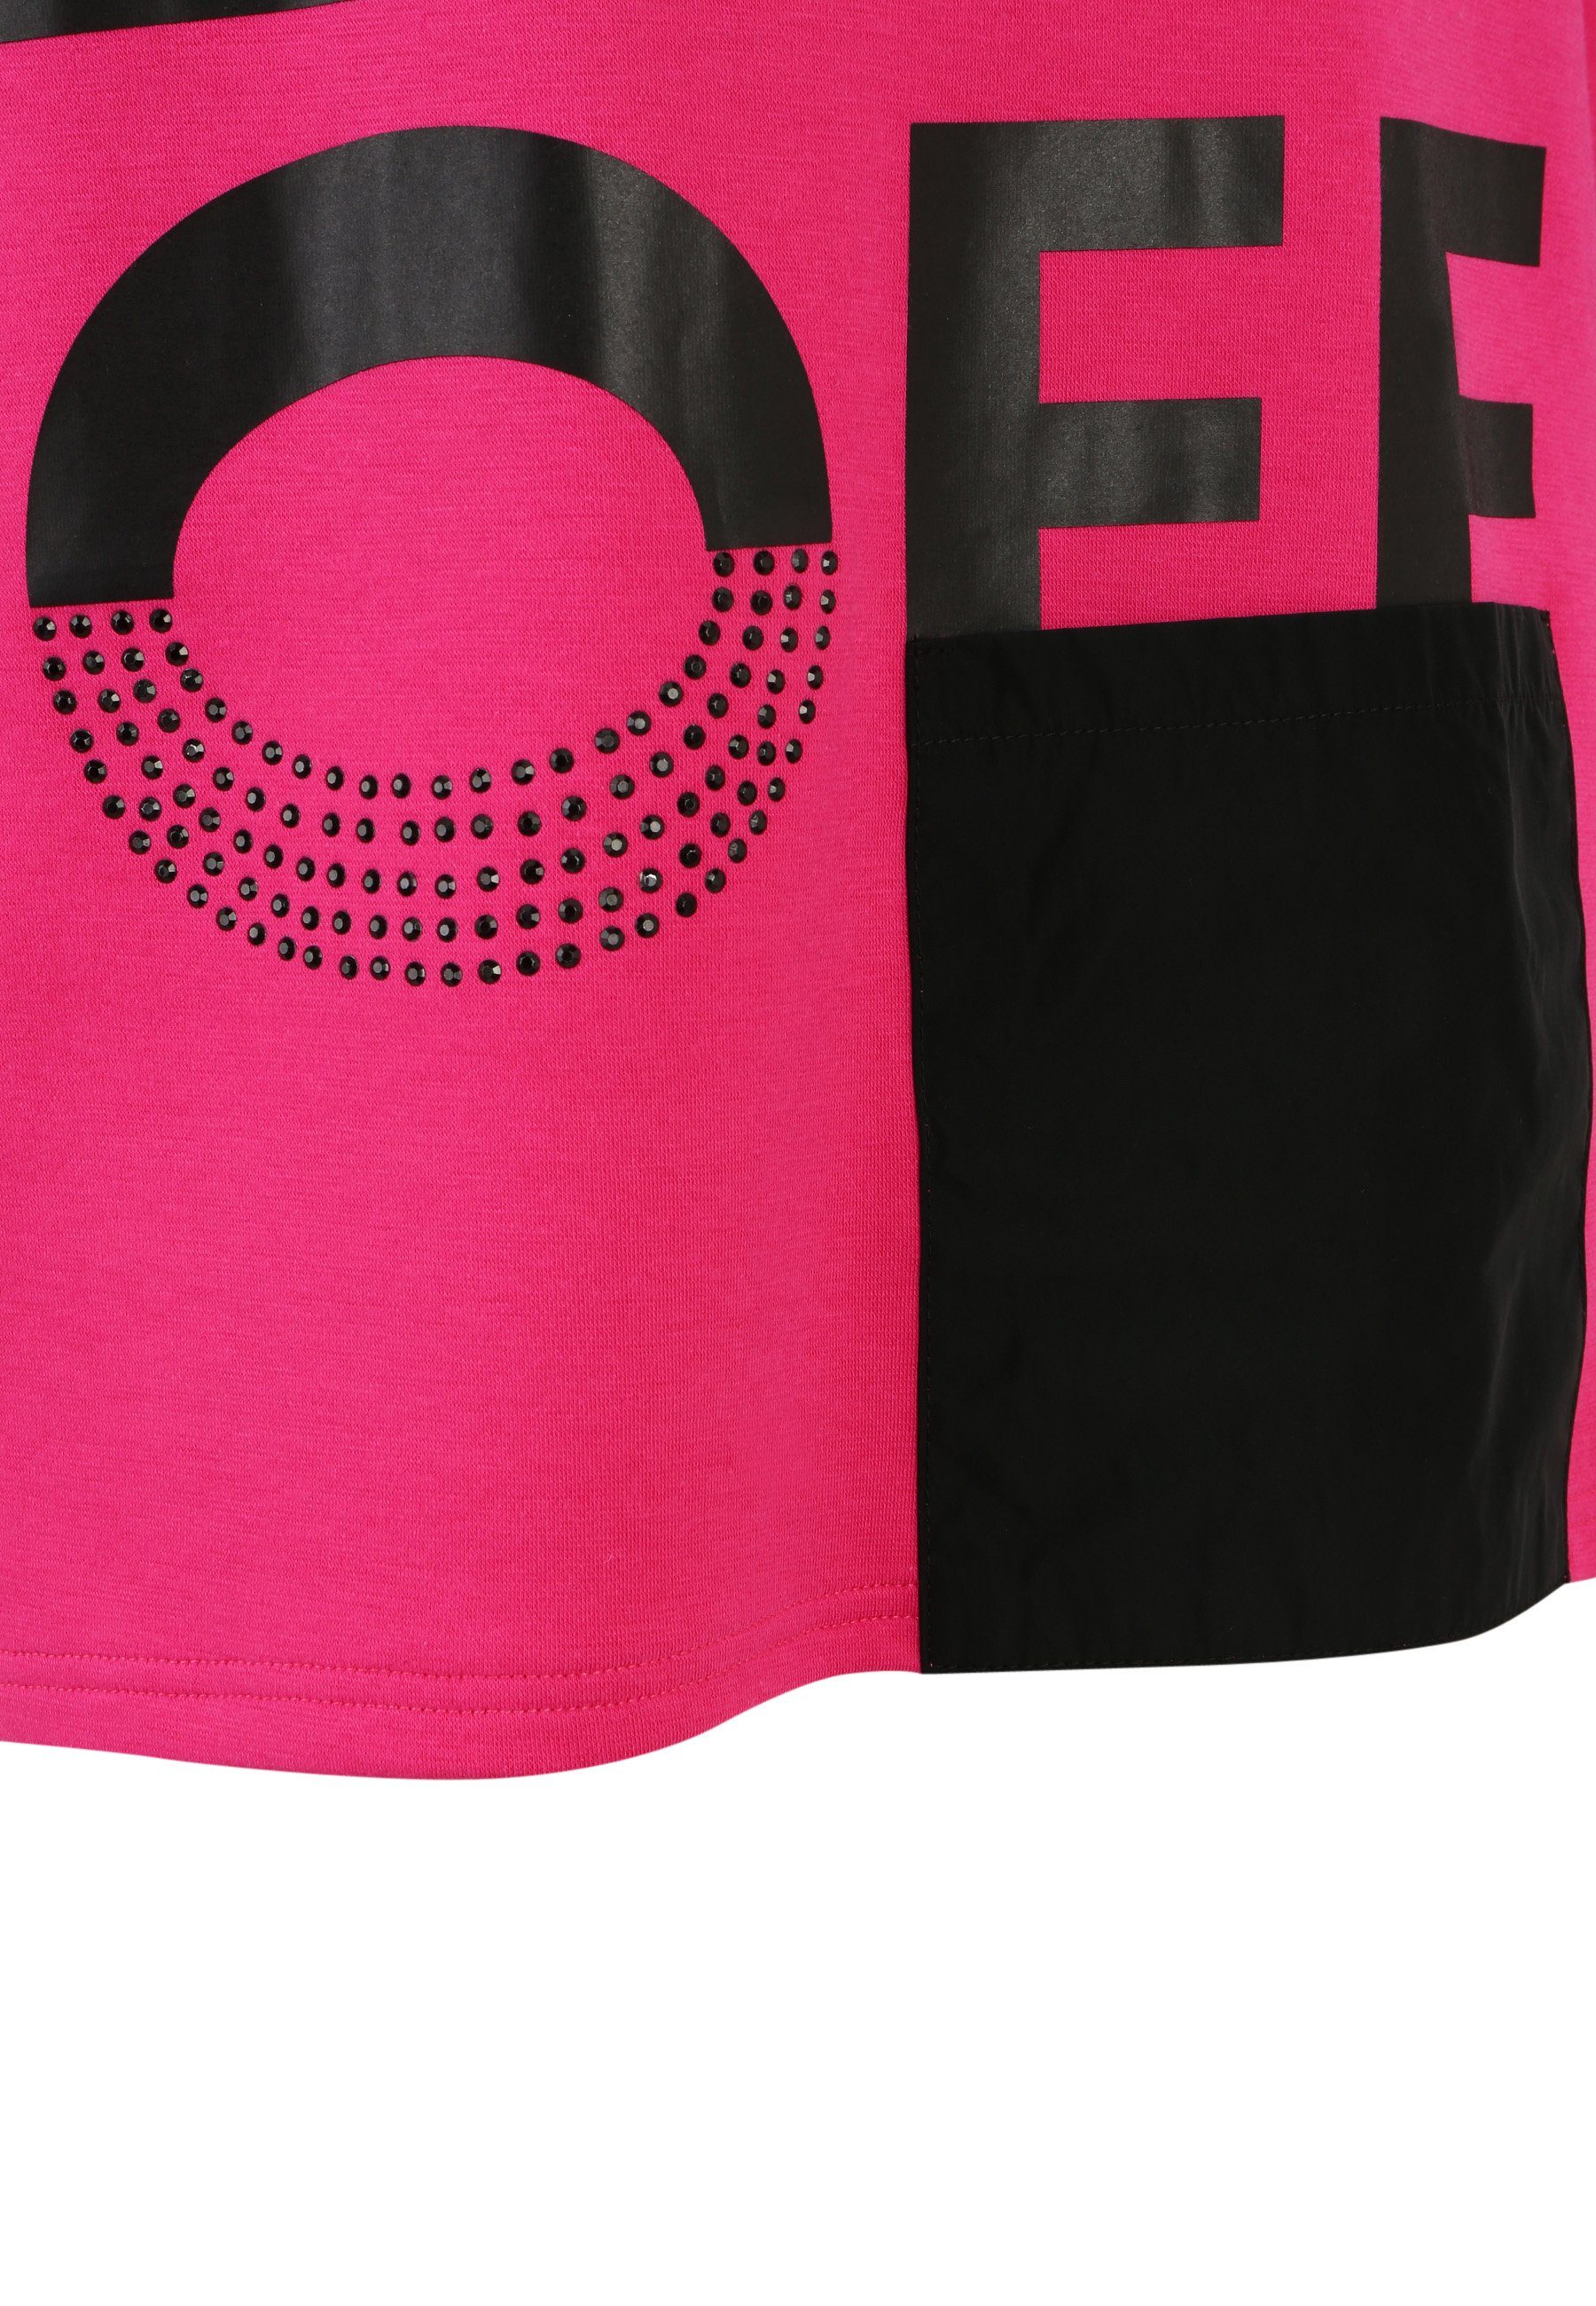 Doris Streich Longshirt Sweatshirt und mit Design Nylon-Tasche PINK modernem Motivprint mit